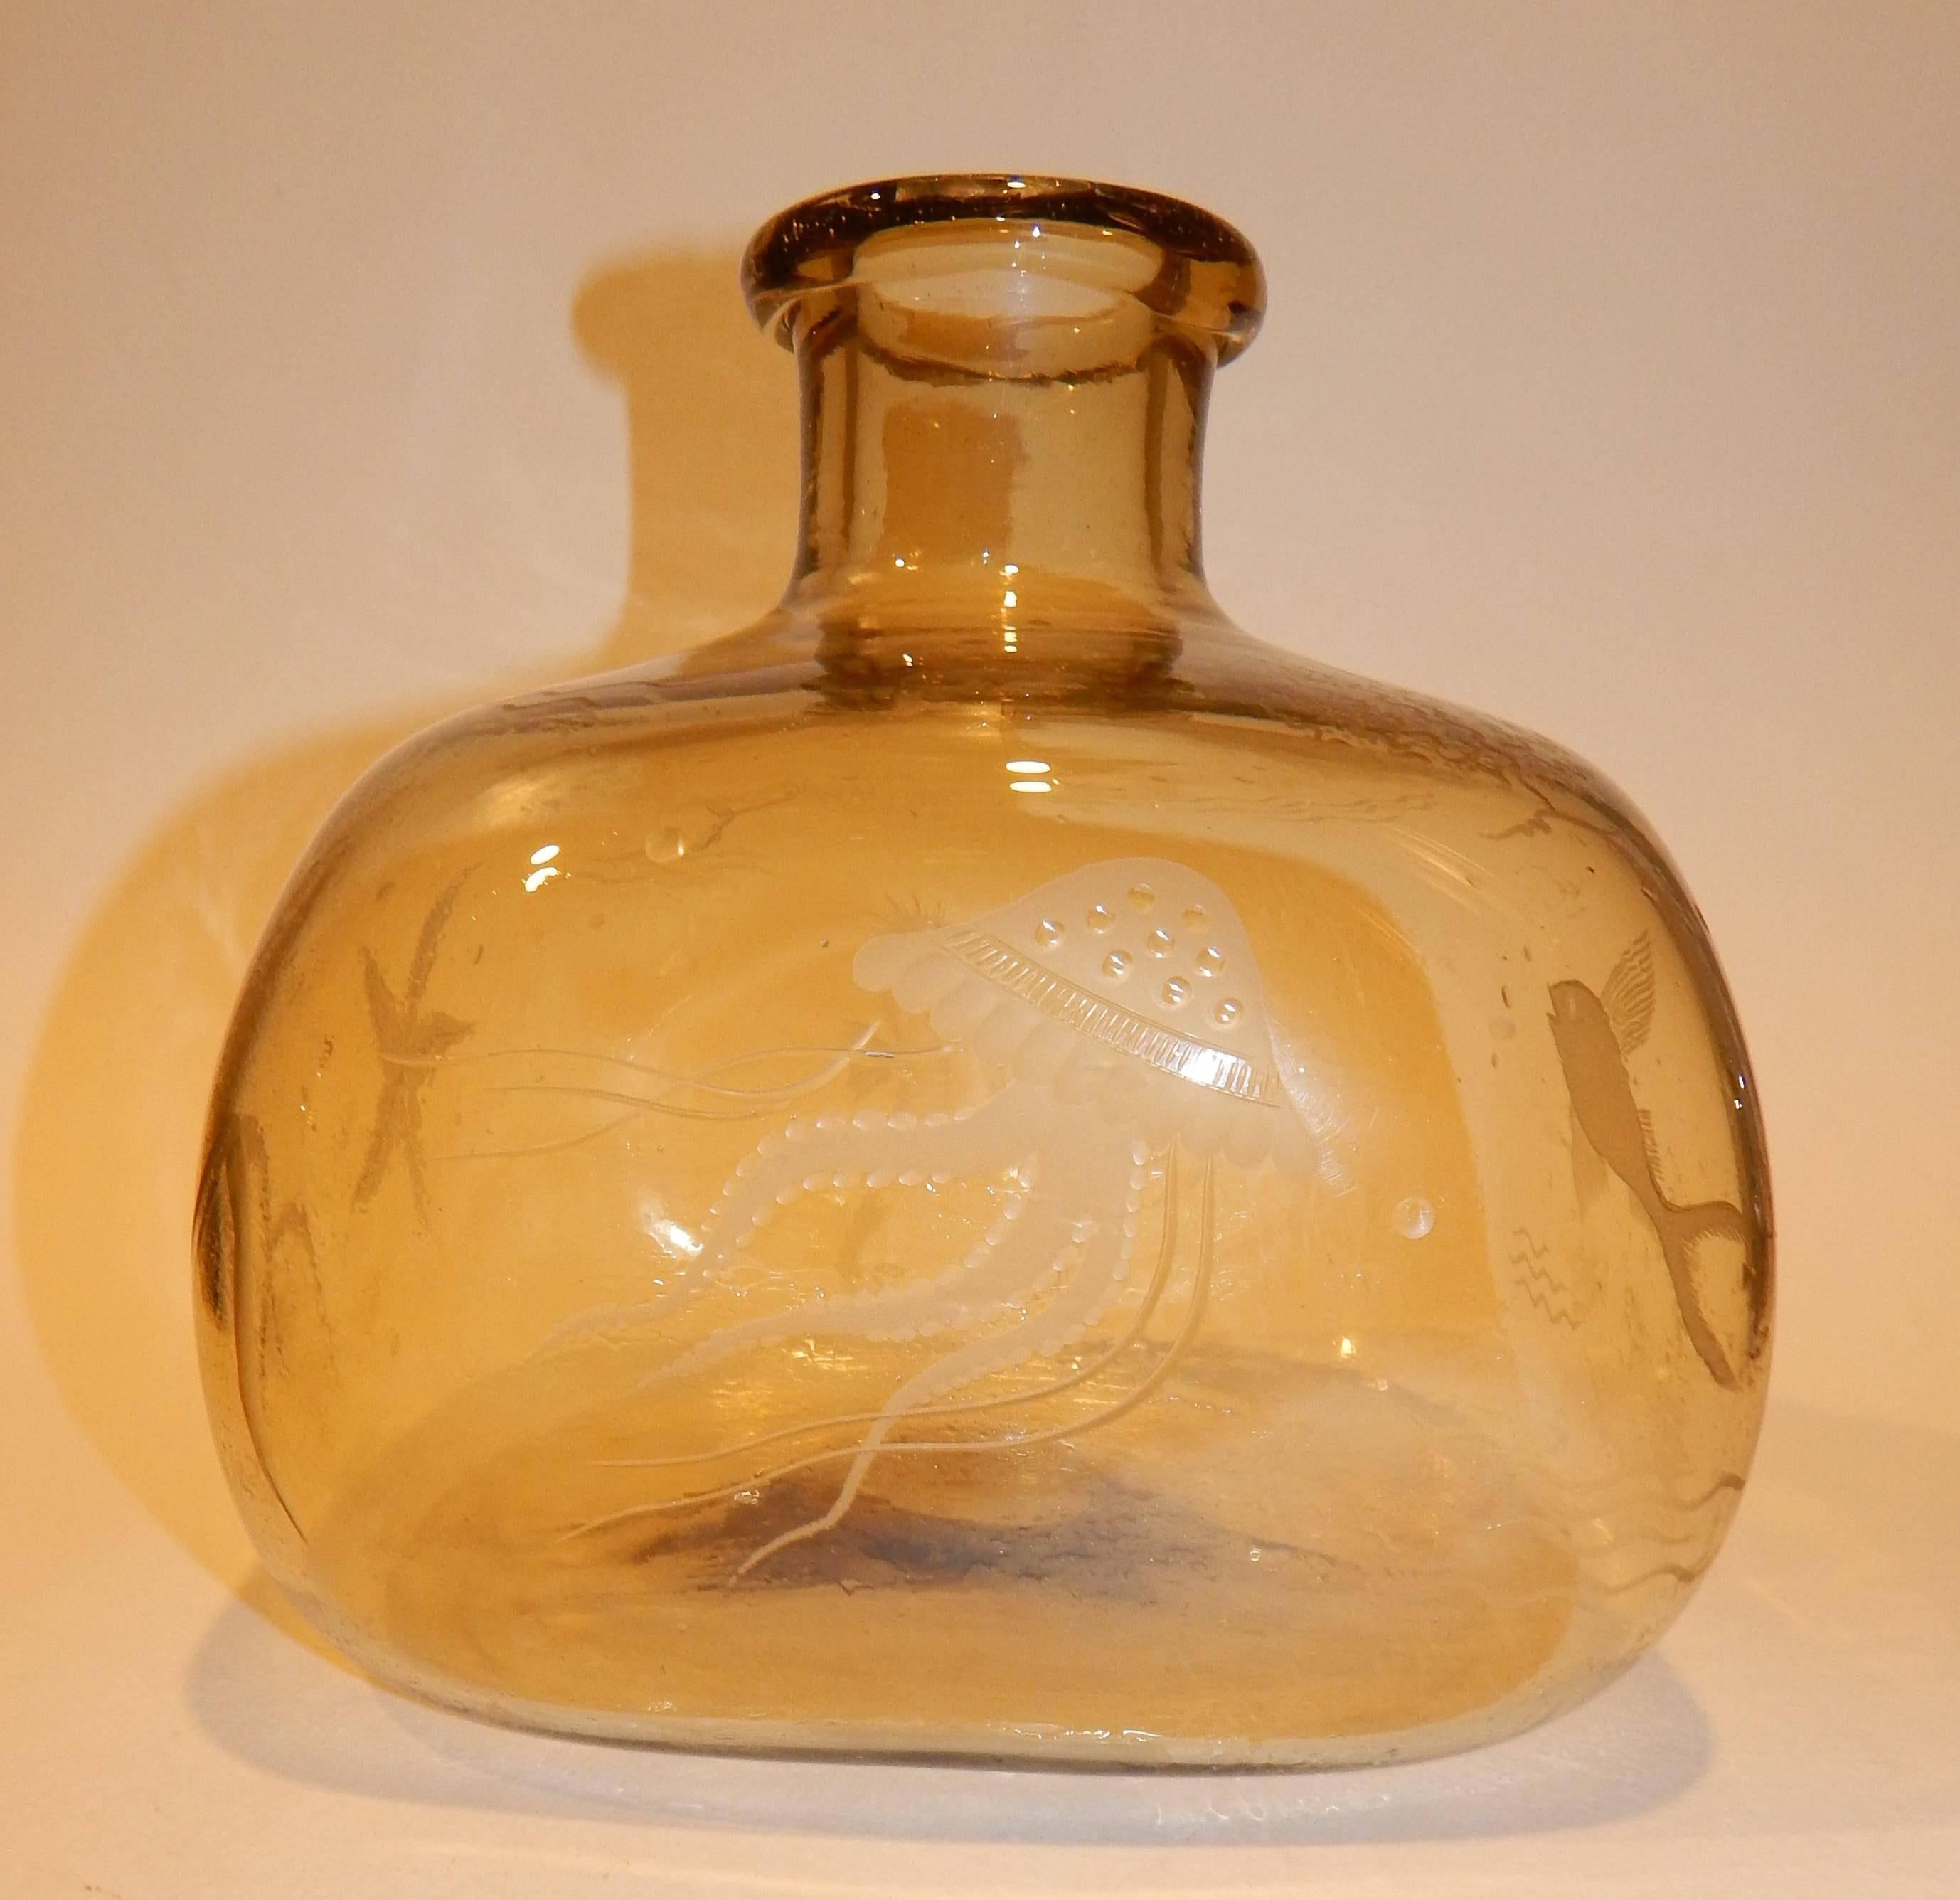 Vases en verre soufflé de couleur ambre (italien ?) avec des motifs gravés. 
Verre gravé, pontil rectifié, vers les années 1940.
Un vase représente la vie aquatique : Hippocampes, étoiles de mer, etc.
Un vase présente différentes formes de